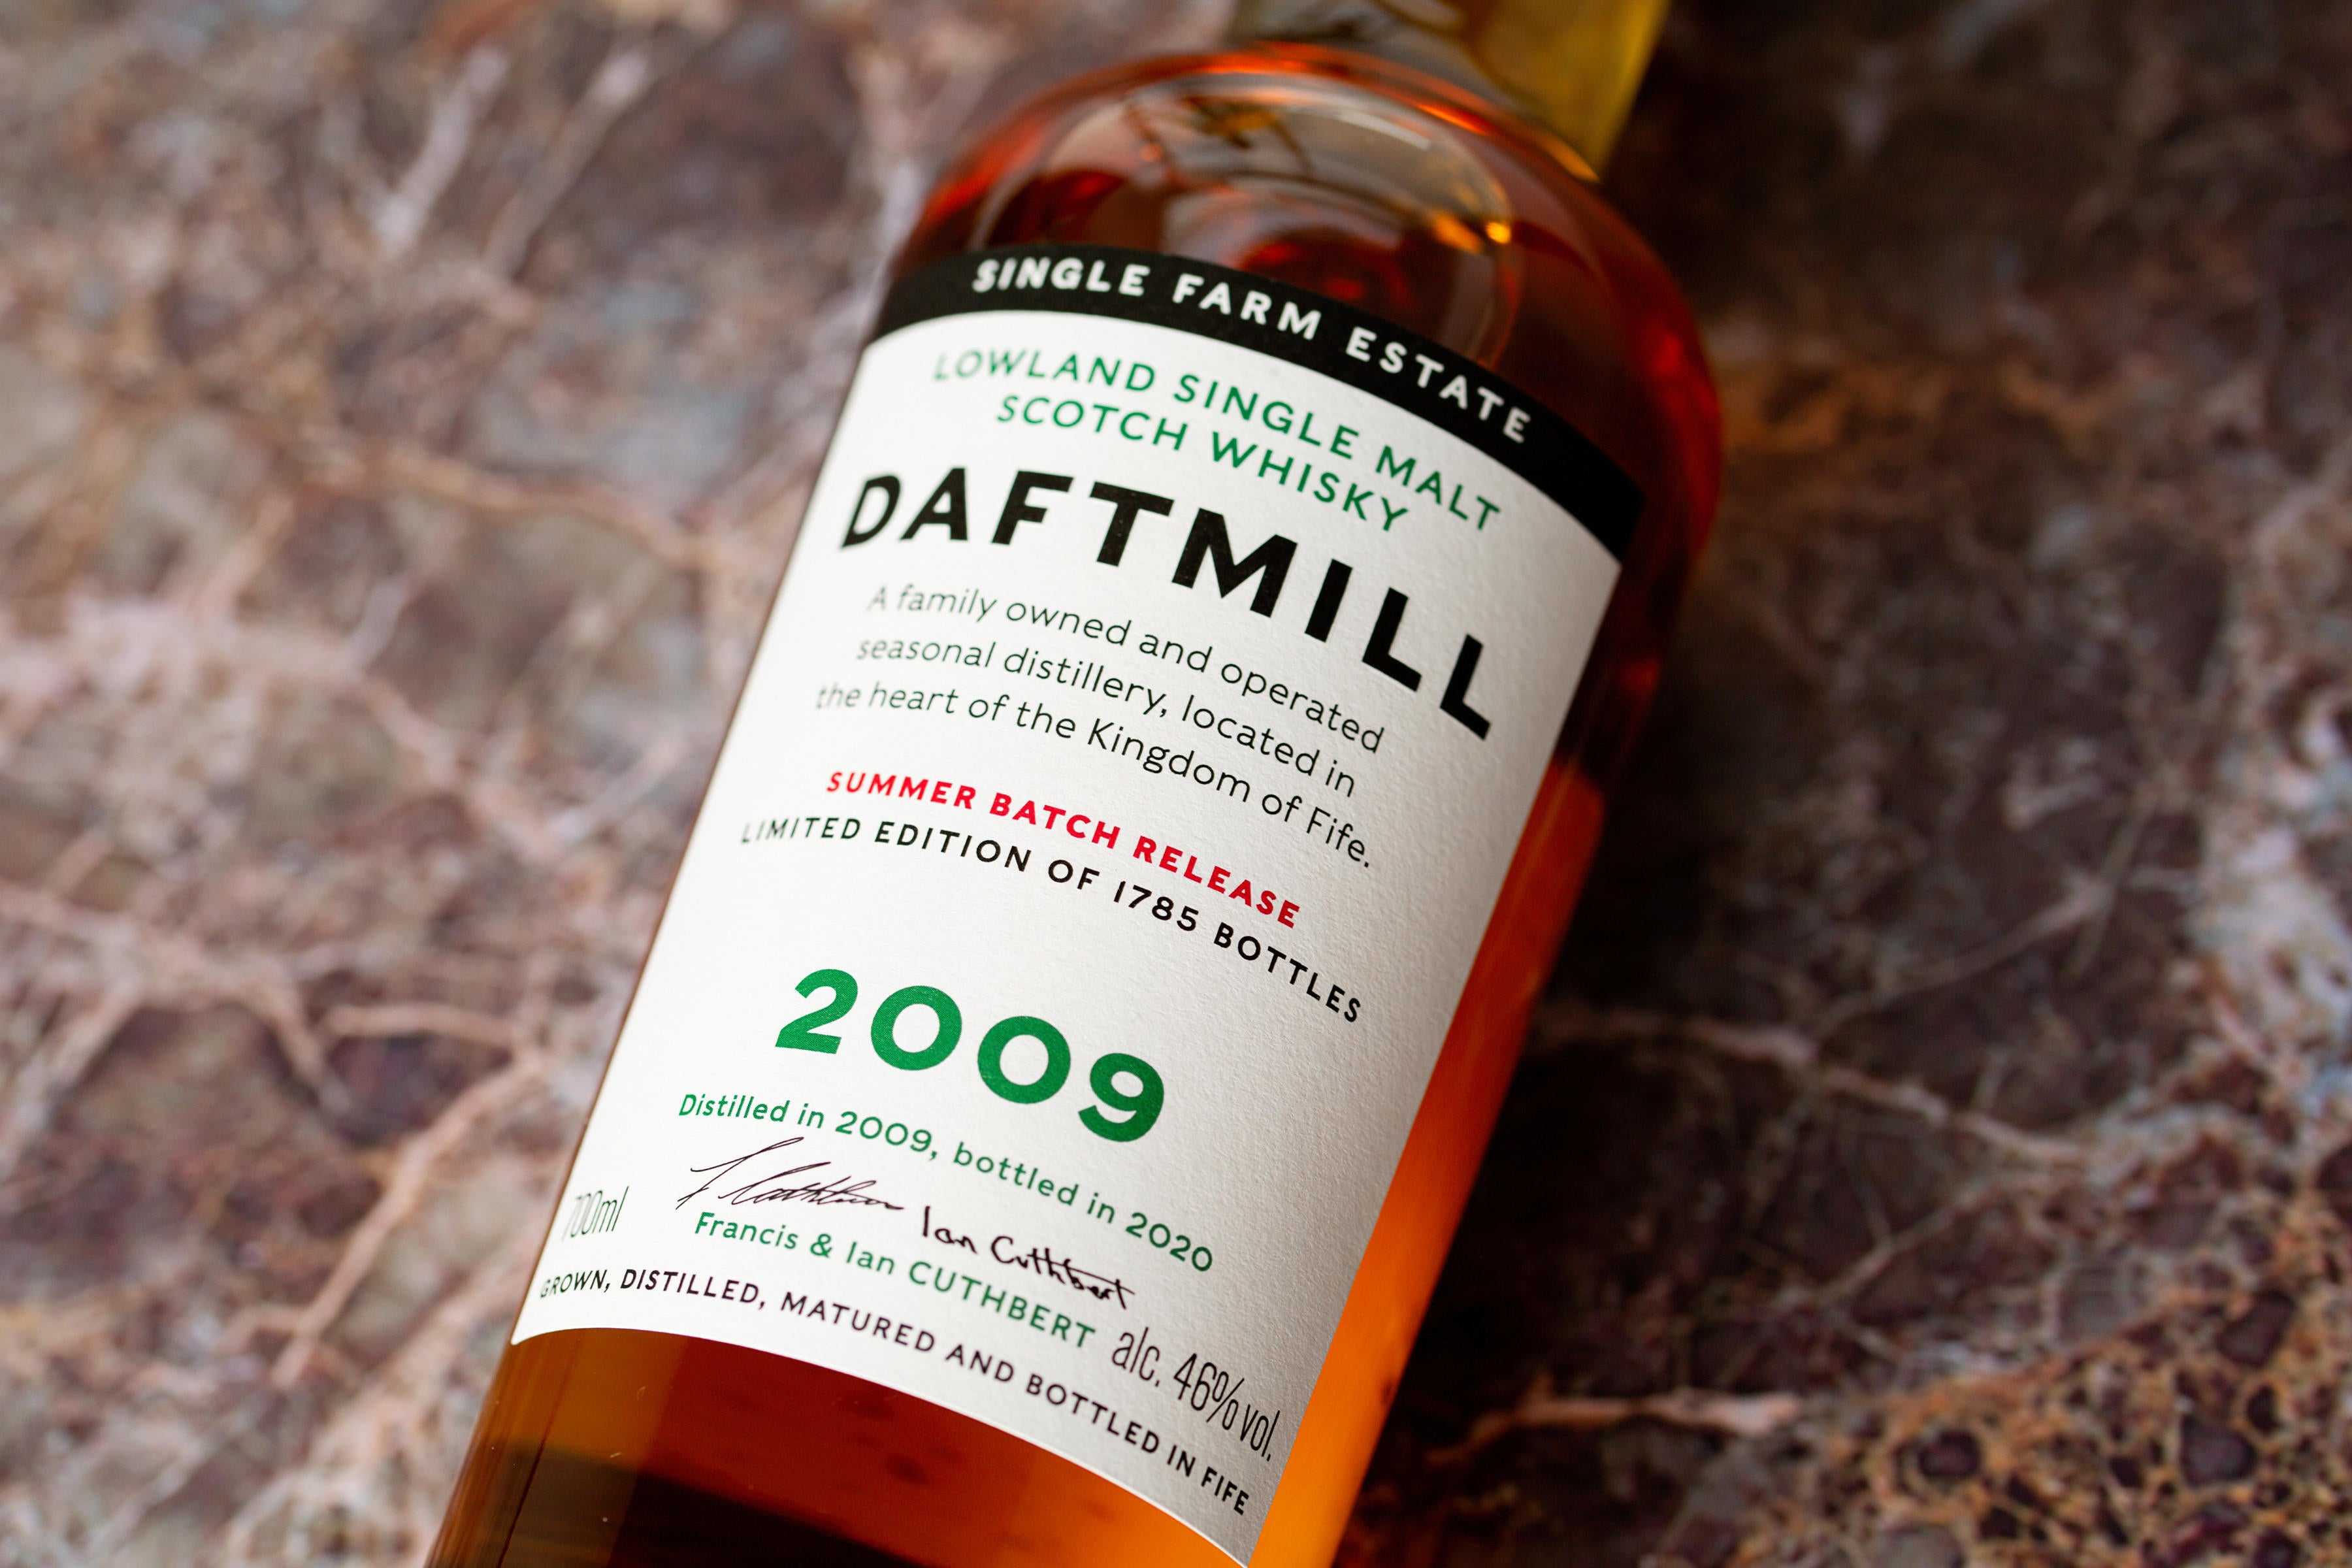 Daftmill 2009 Summer Batch Release Announcement